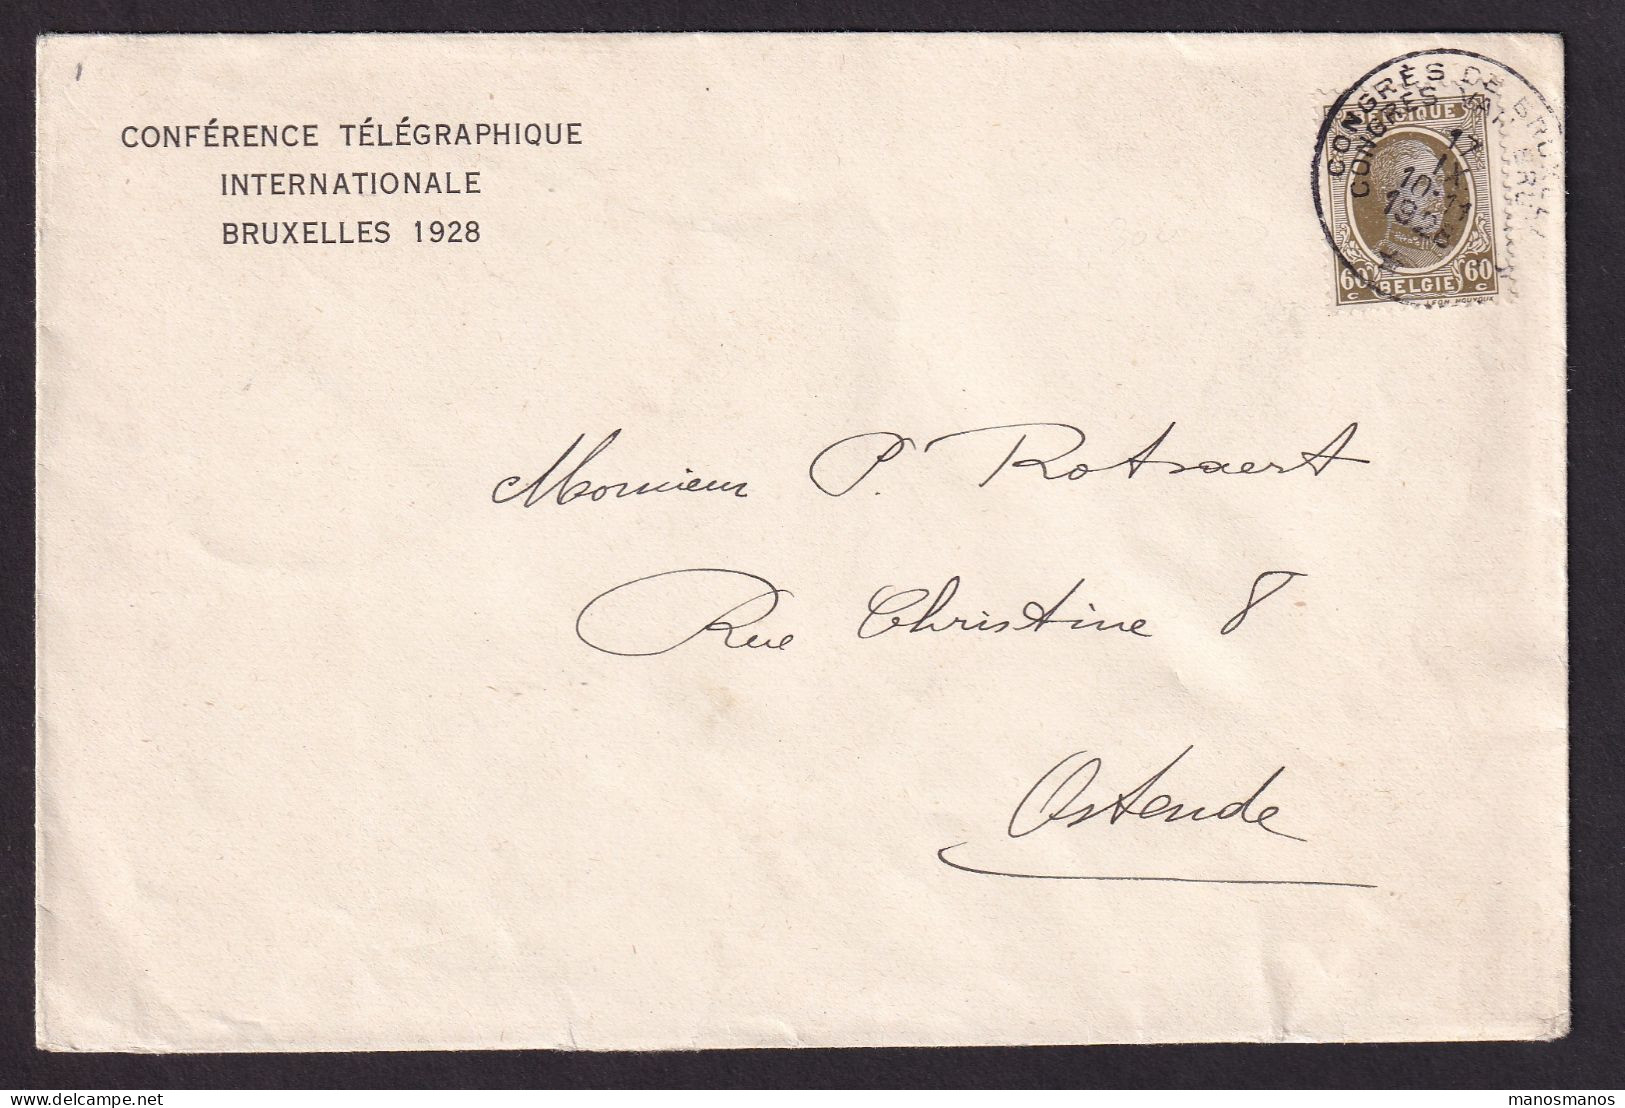 DDEE 848 -- Enveloppe Entete Conférence Télégraphique Internationale BRUXELLES 1928 - TP Houyoux Cachet Du Congrès RRR - Telegrammen